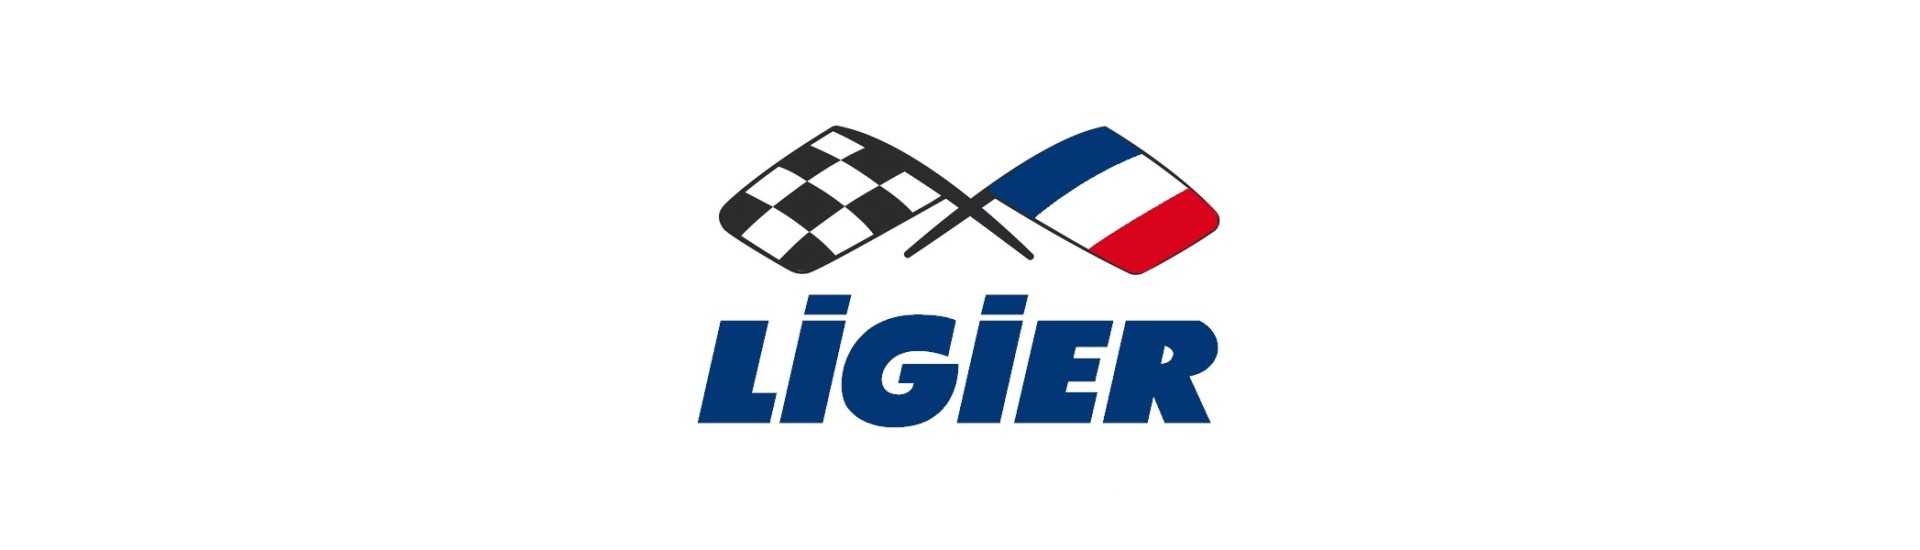 Dörröppningskabel till bästa prisbil utan licens Ligier